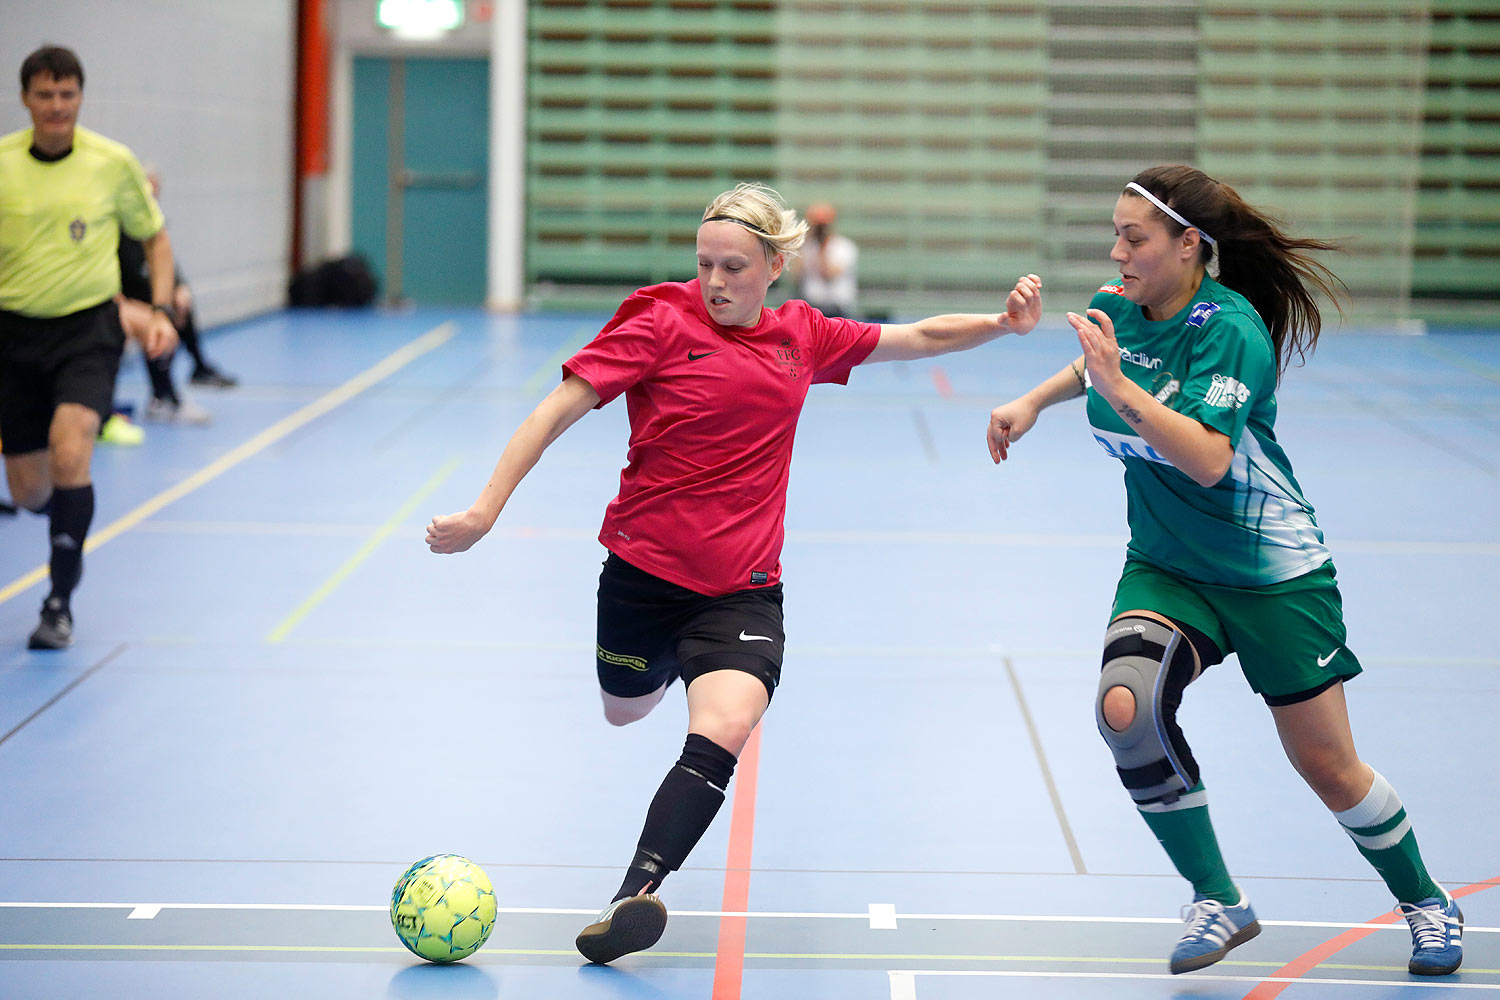 Skövde Futsalcup Damer Falköping Futsal Club-Våmbs IF,dam,Arena Skövde,Skövde,Sverige,Skövde Futsalcup 2016,Futsal,2016,141896